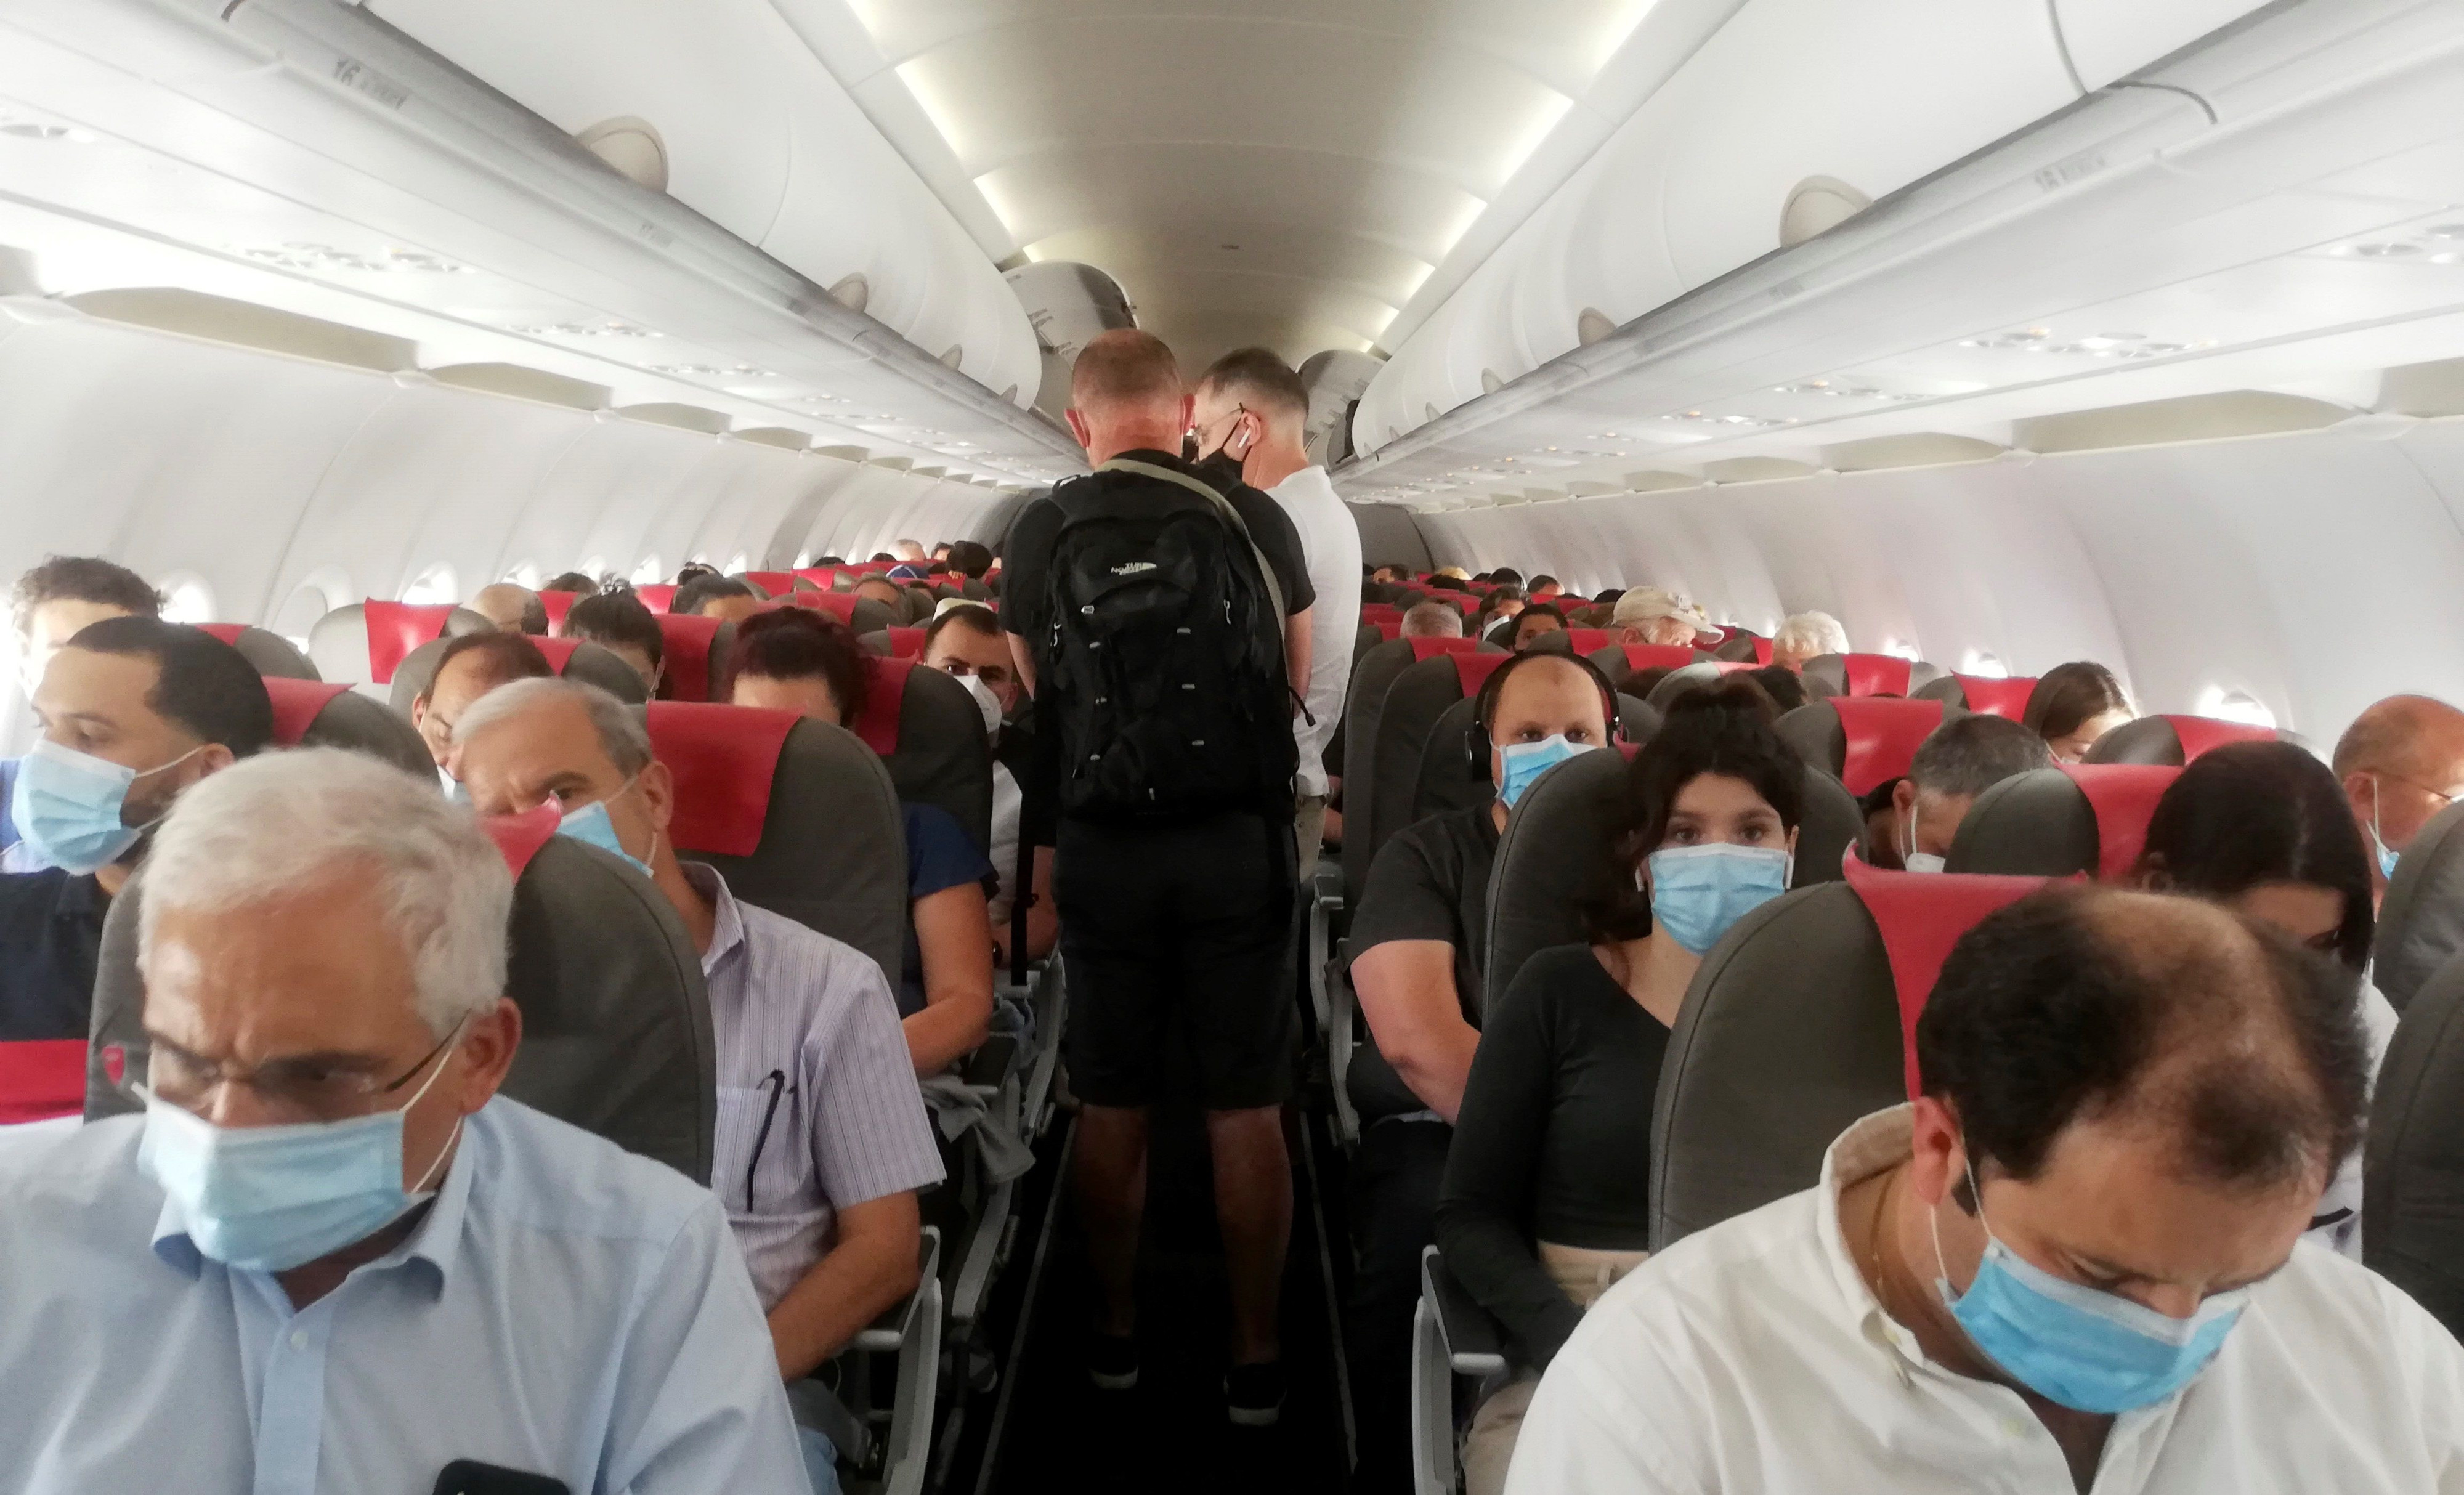 Varios pasajeros se acomodan antes del despegue de un vuelo / EFE